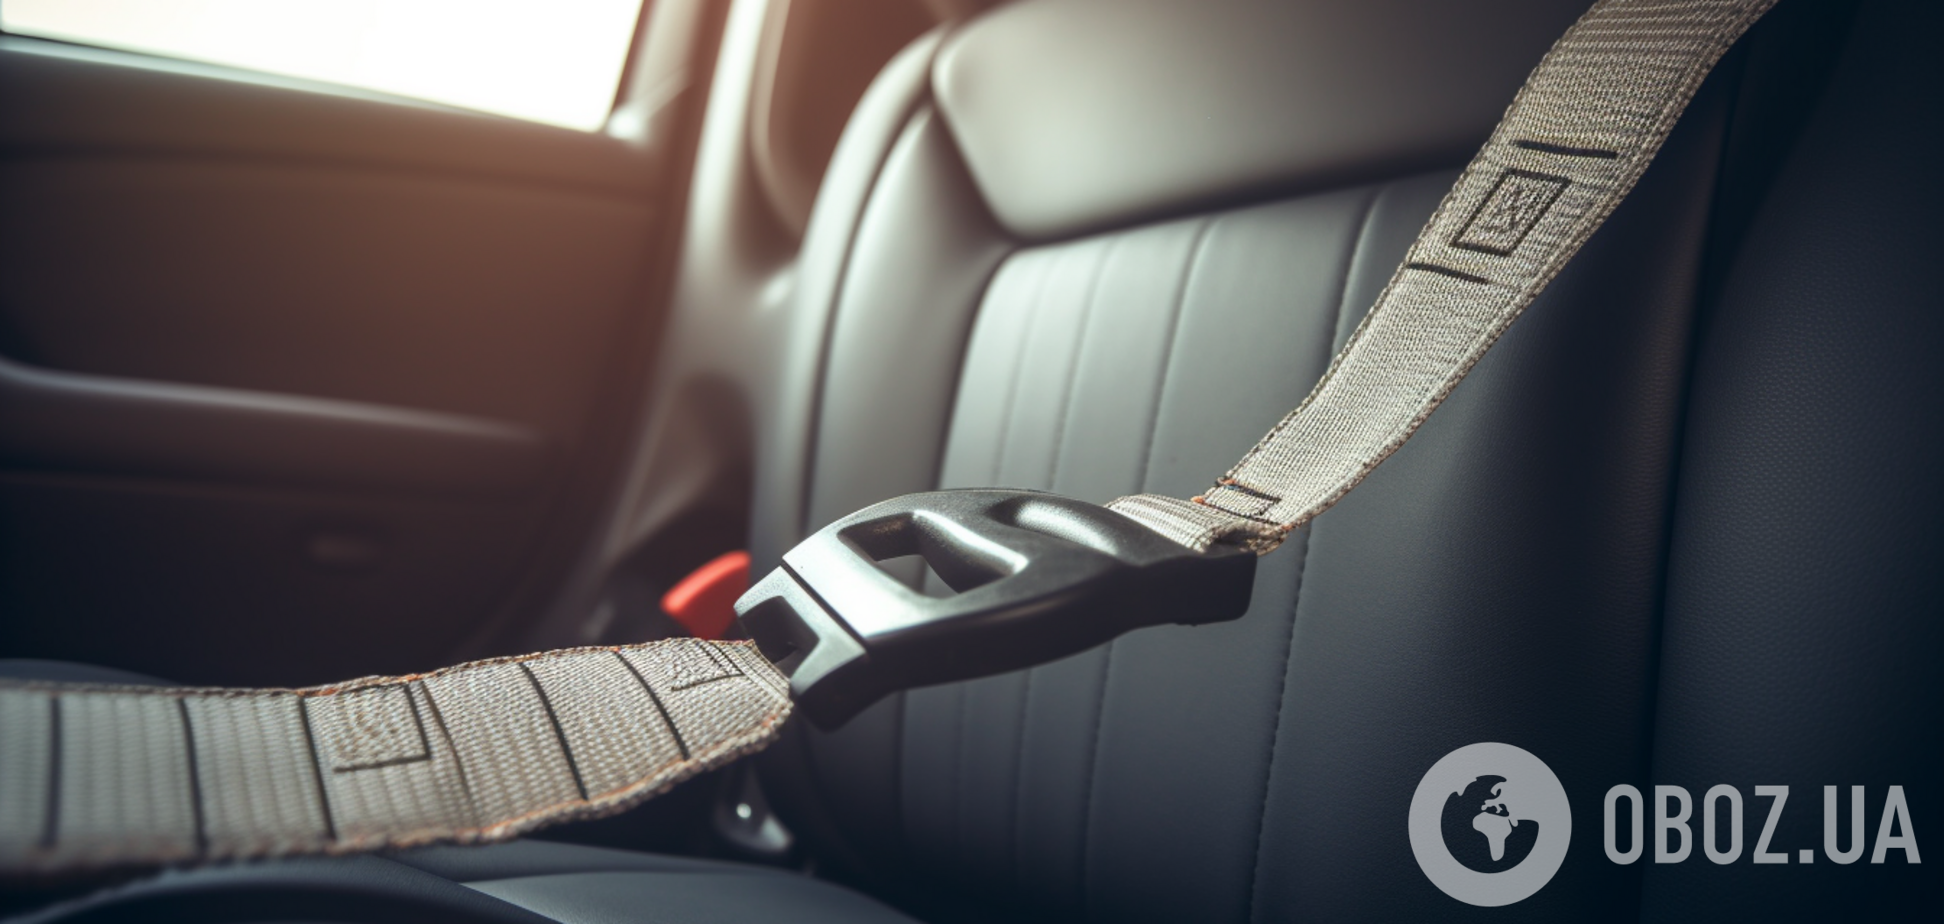 Ошибка при отстегивании ремня безопасности может навредить авто: как делать нельзя